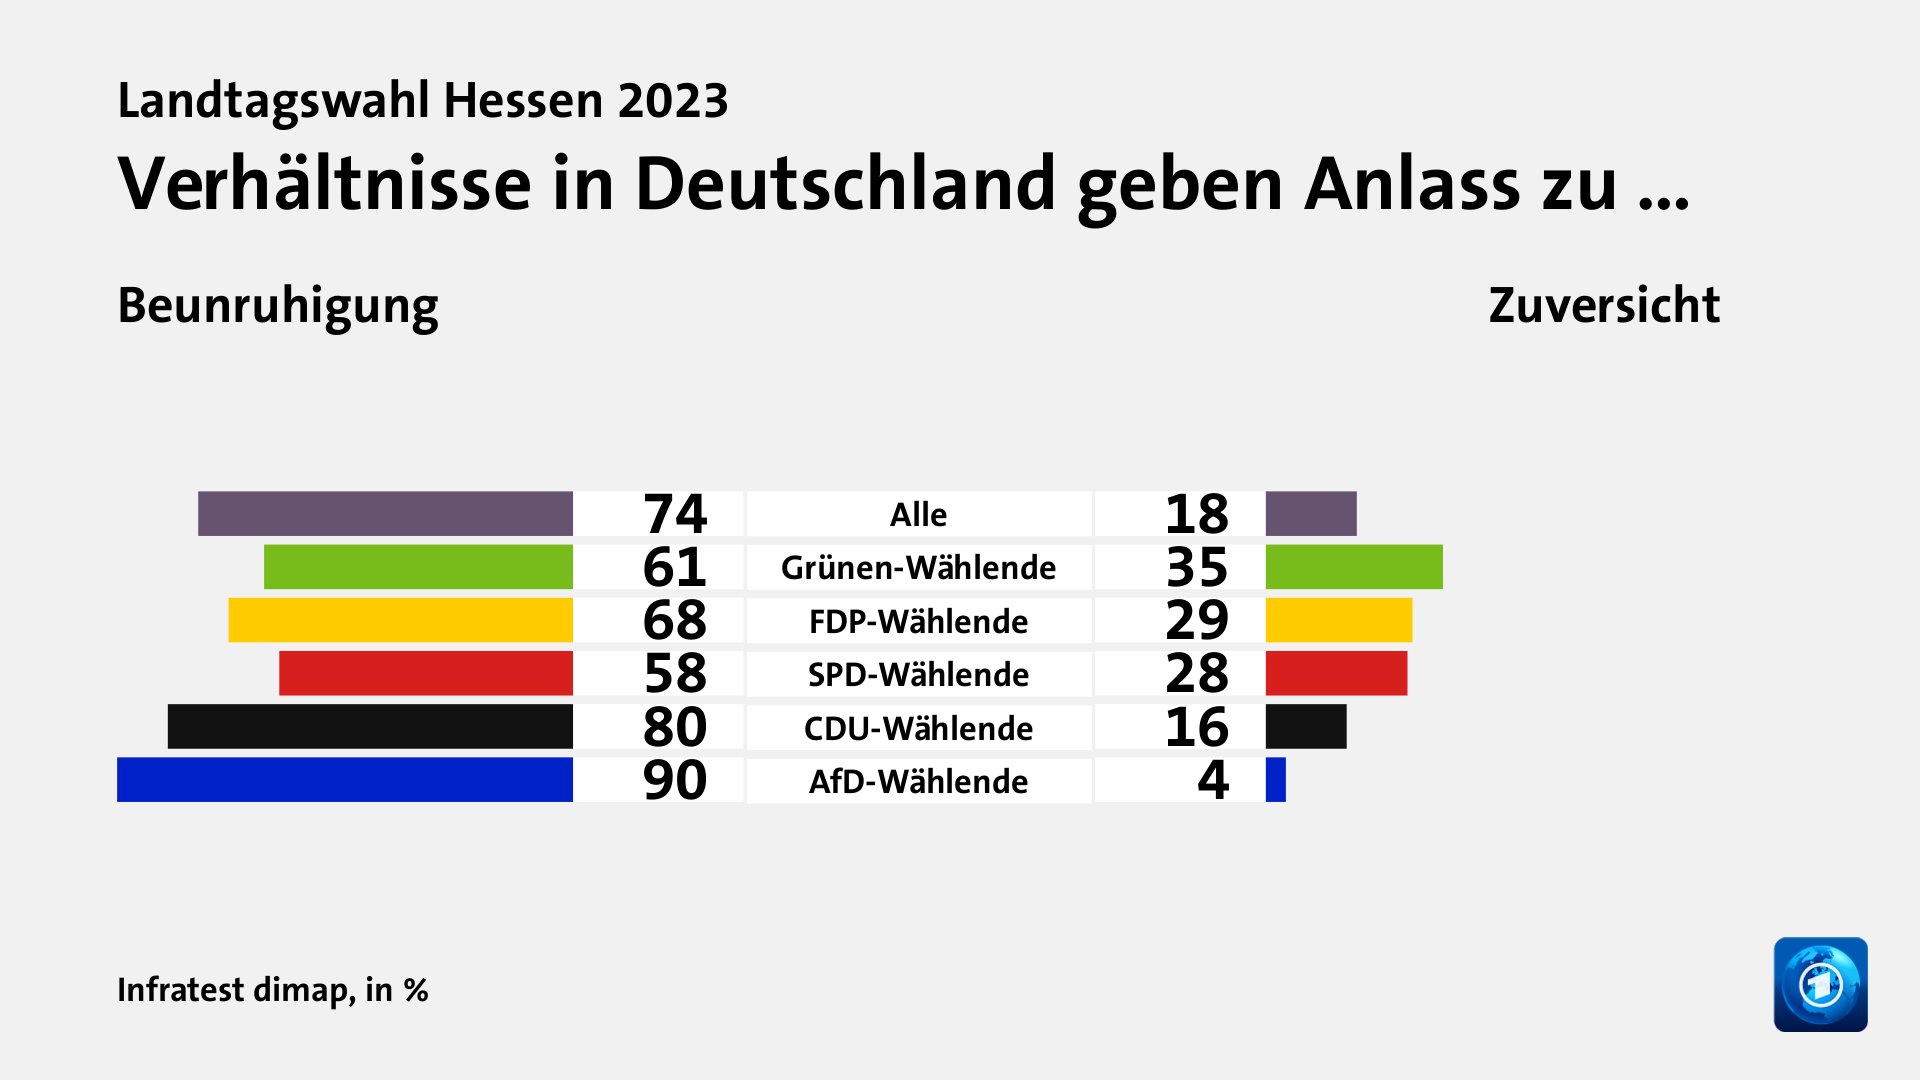 Verhältnisse in Deutschland geben Anlass zu … (in %) Alle: Beunruhigung 74, Zuversicht 18; Grünen-Wählende: Beunruhigung 61, Zuversicht 35; FDP-Wählende: Beunruhigung 68, Zuversicht 29; SPD-Wählende: Beunruhigung 58, Zuversicht 28; CDU-Wählende: Beunruhigung 80, Zuversicht 16; AfD-Wählende: Beunruhigung 90, Zuversicht 4; Quelle: Infratest dimap